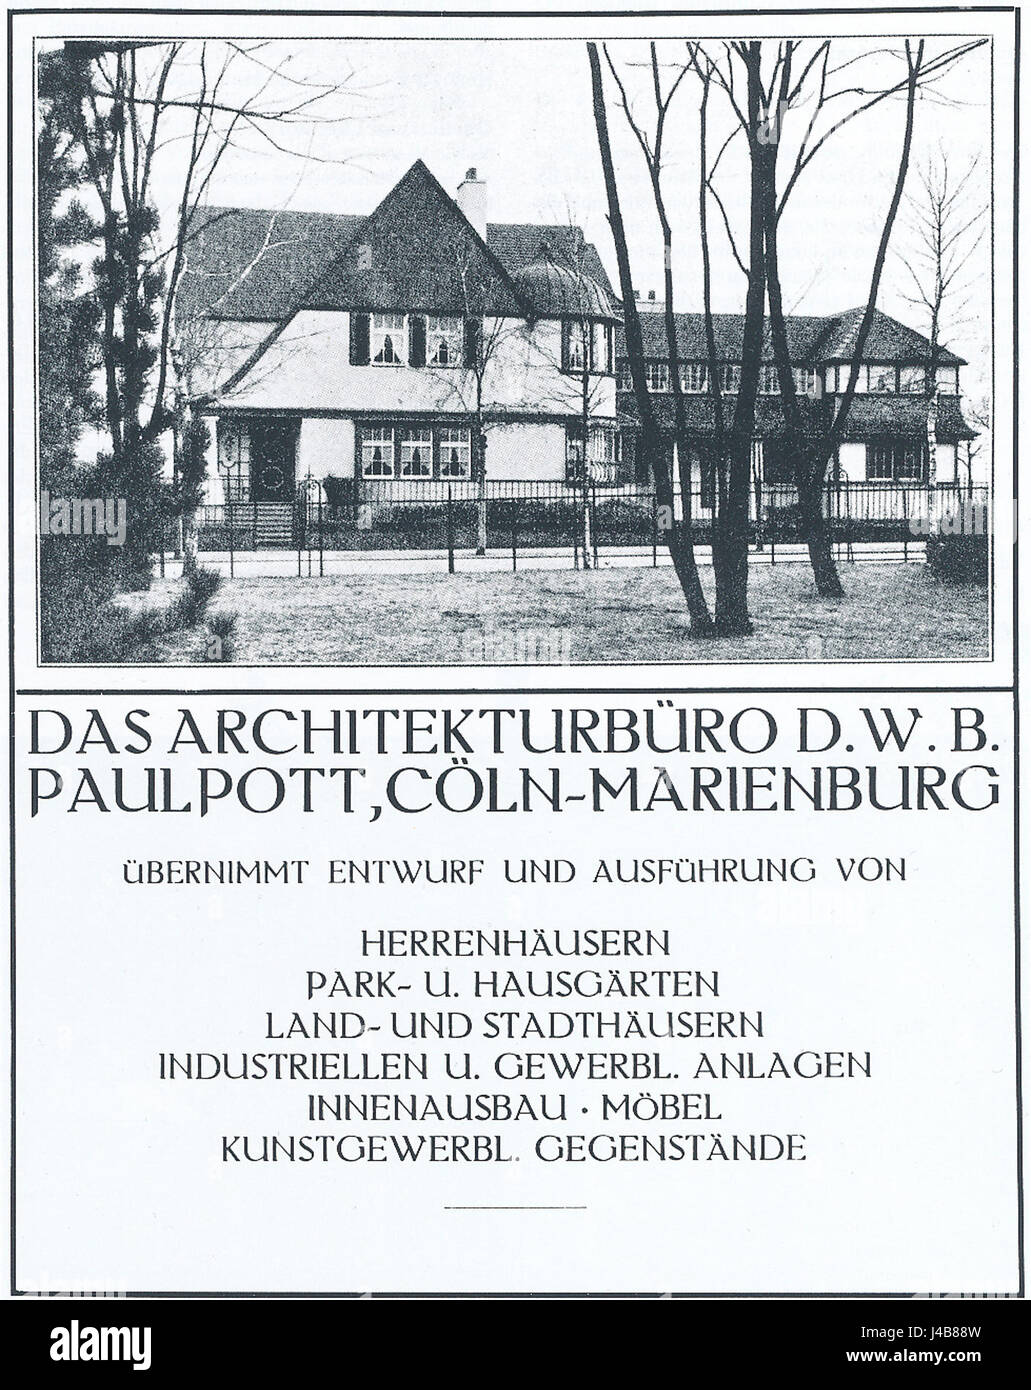 Paul Pott, Werbung des Architekten, 1913 Stock Photo